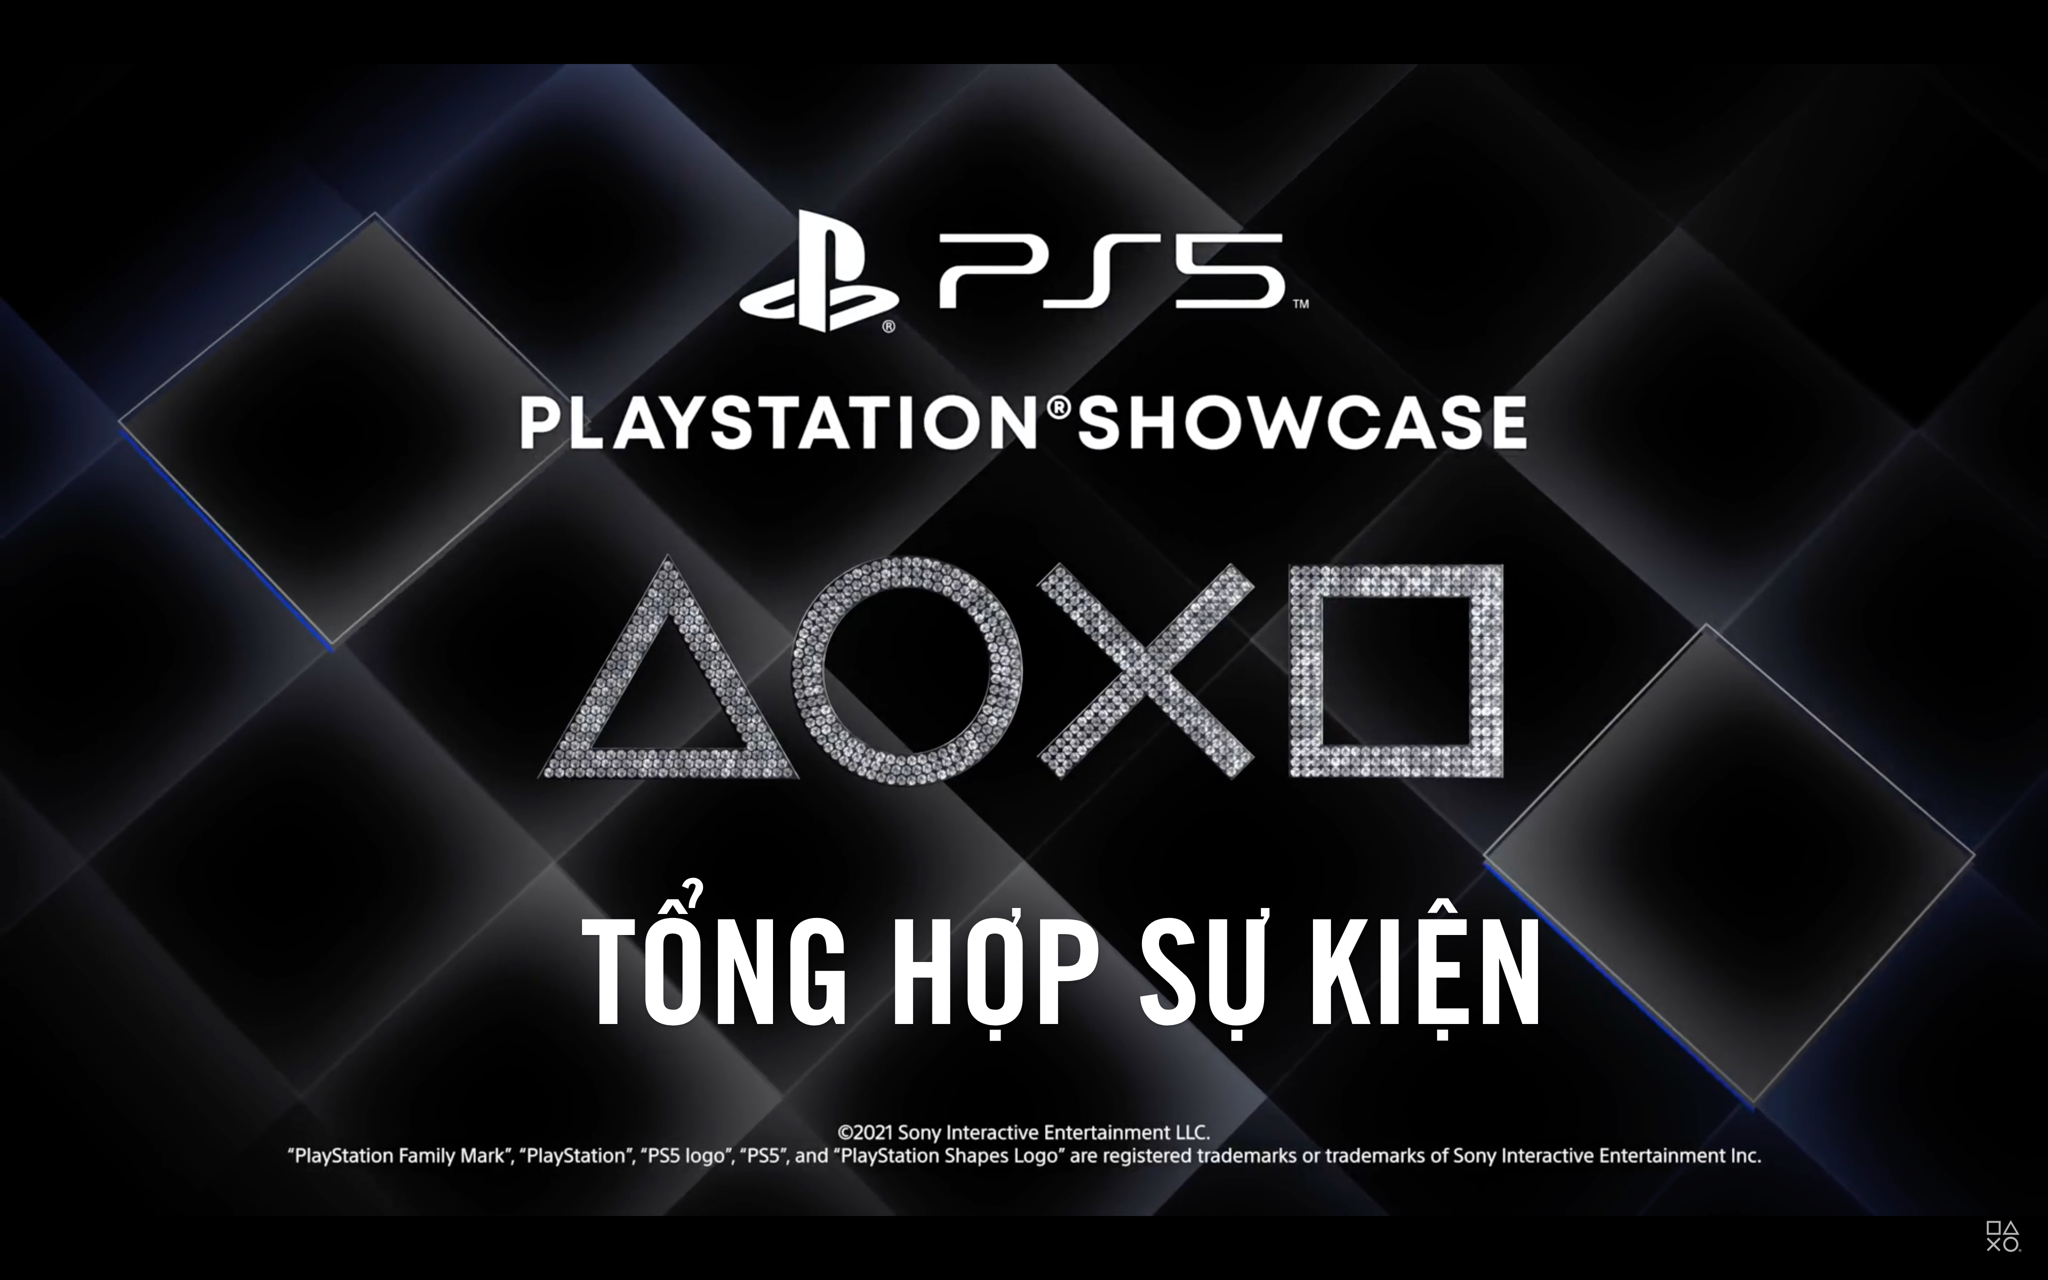 Tổng hợp sự kiện PlayStation Showcase Tháng 9, 2021